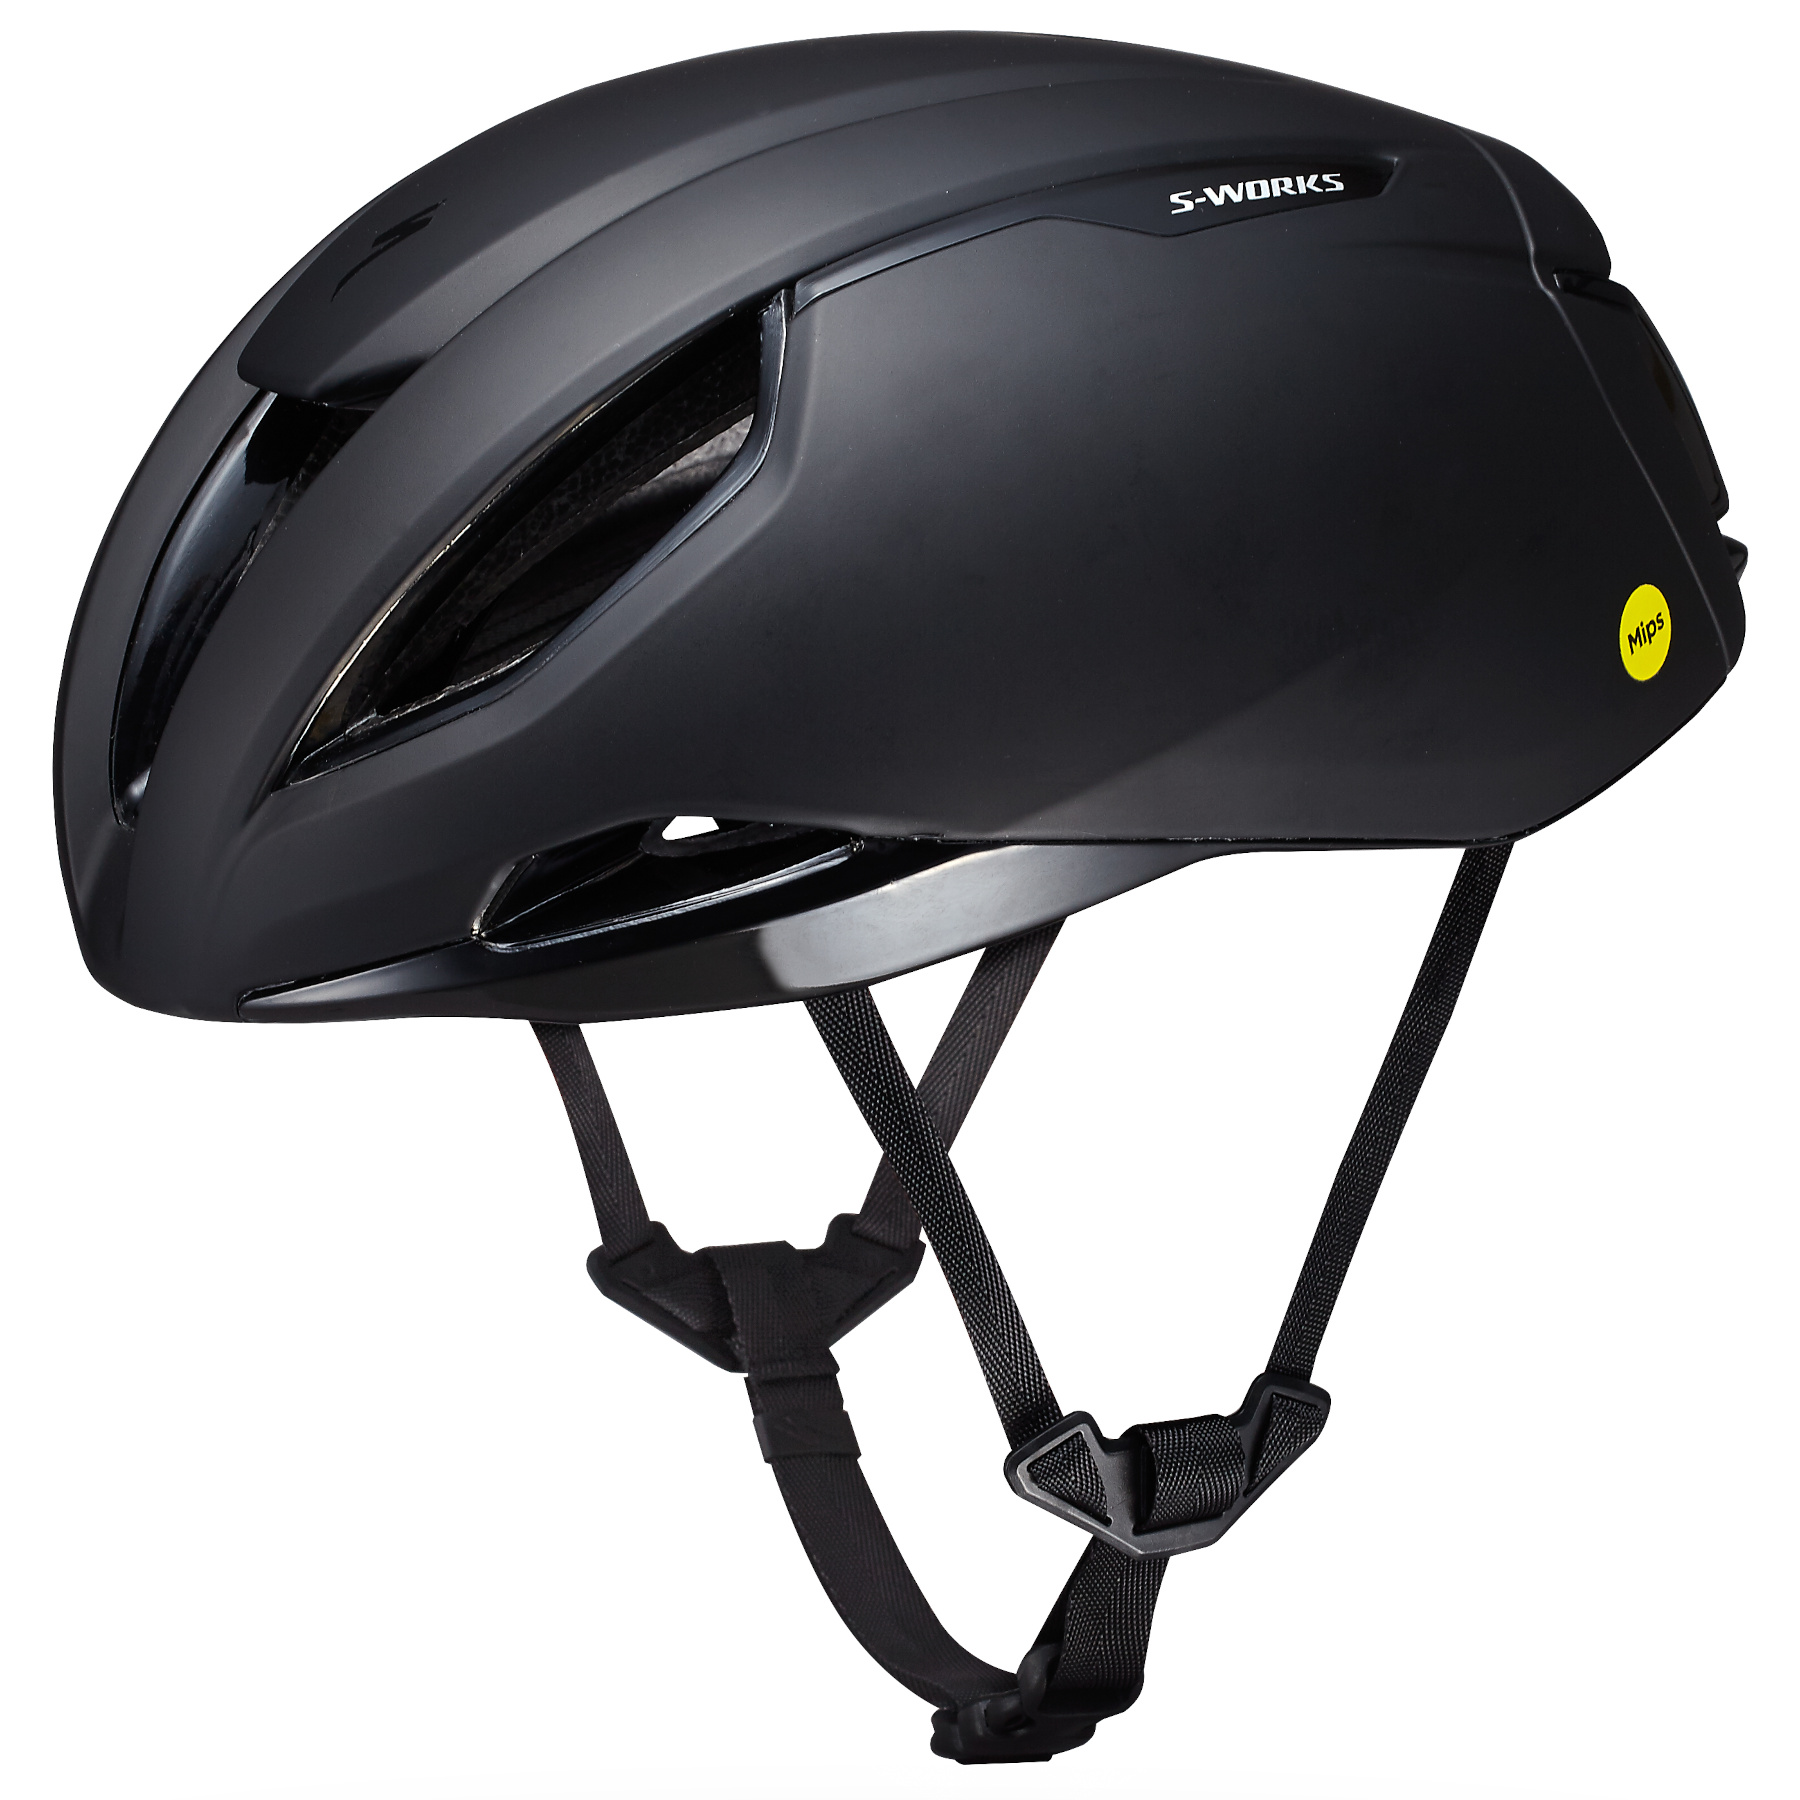 Productfoto van Specialized S-Works Evade 3 Helm Racefietshelm - Zwart